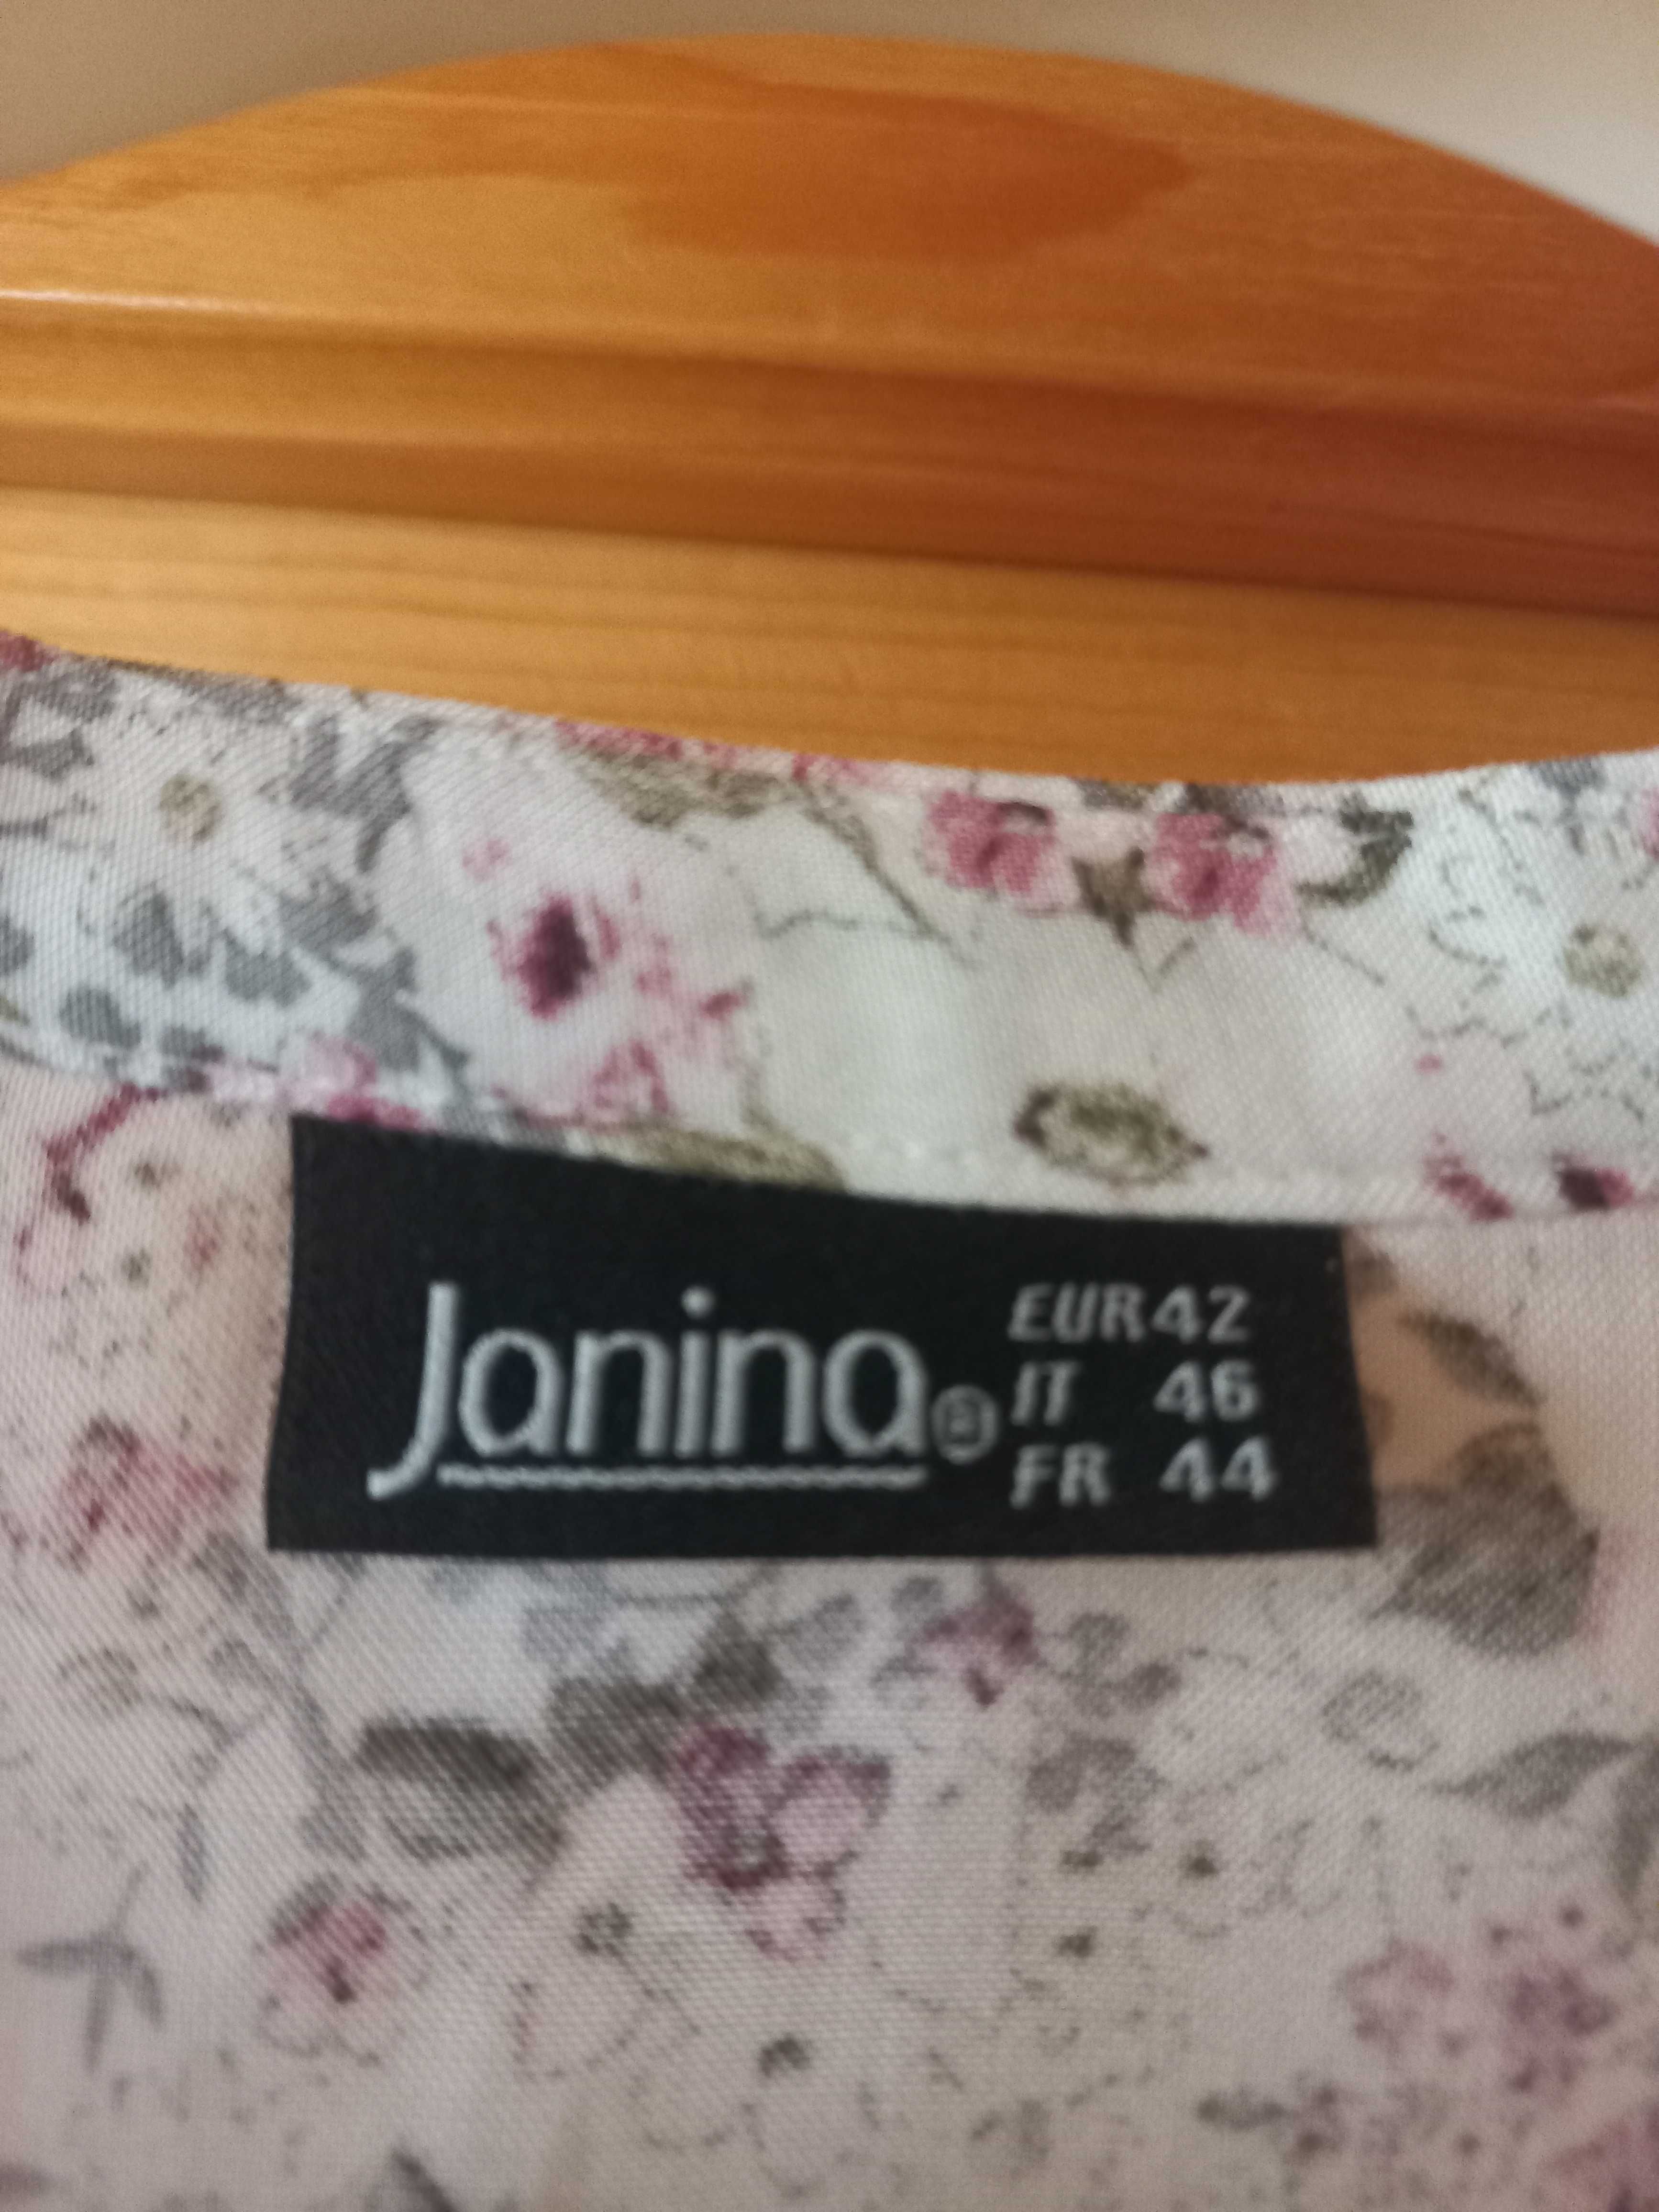 Bluză Janina 42, dama, lungă, mâneca 3/4, vâscoză